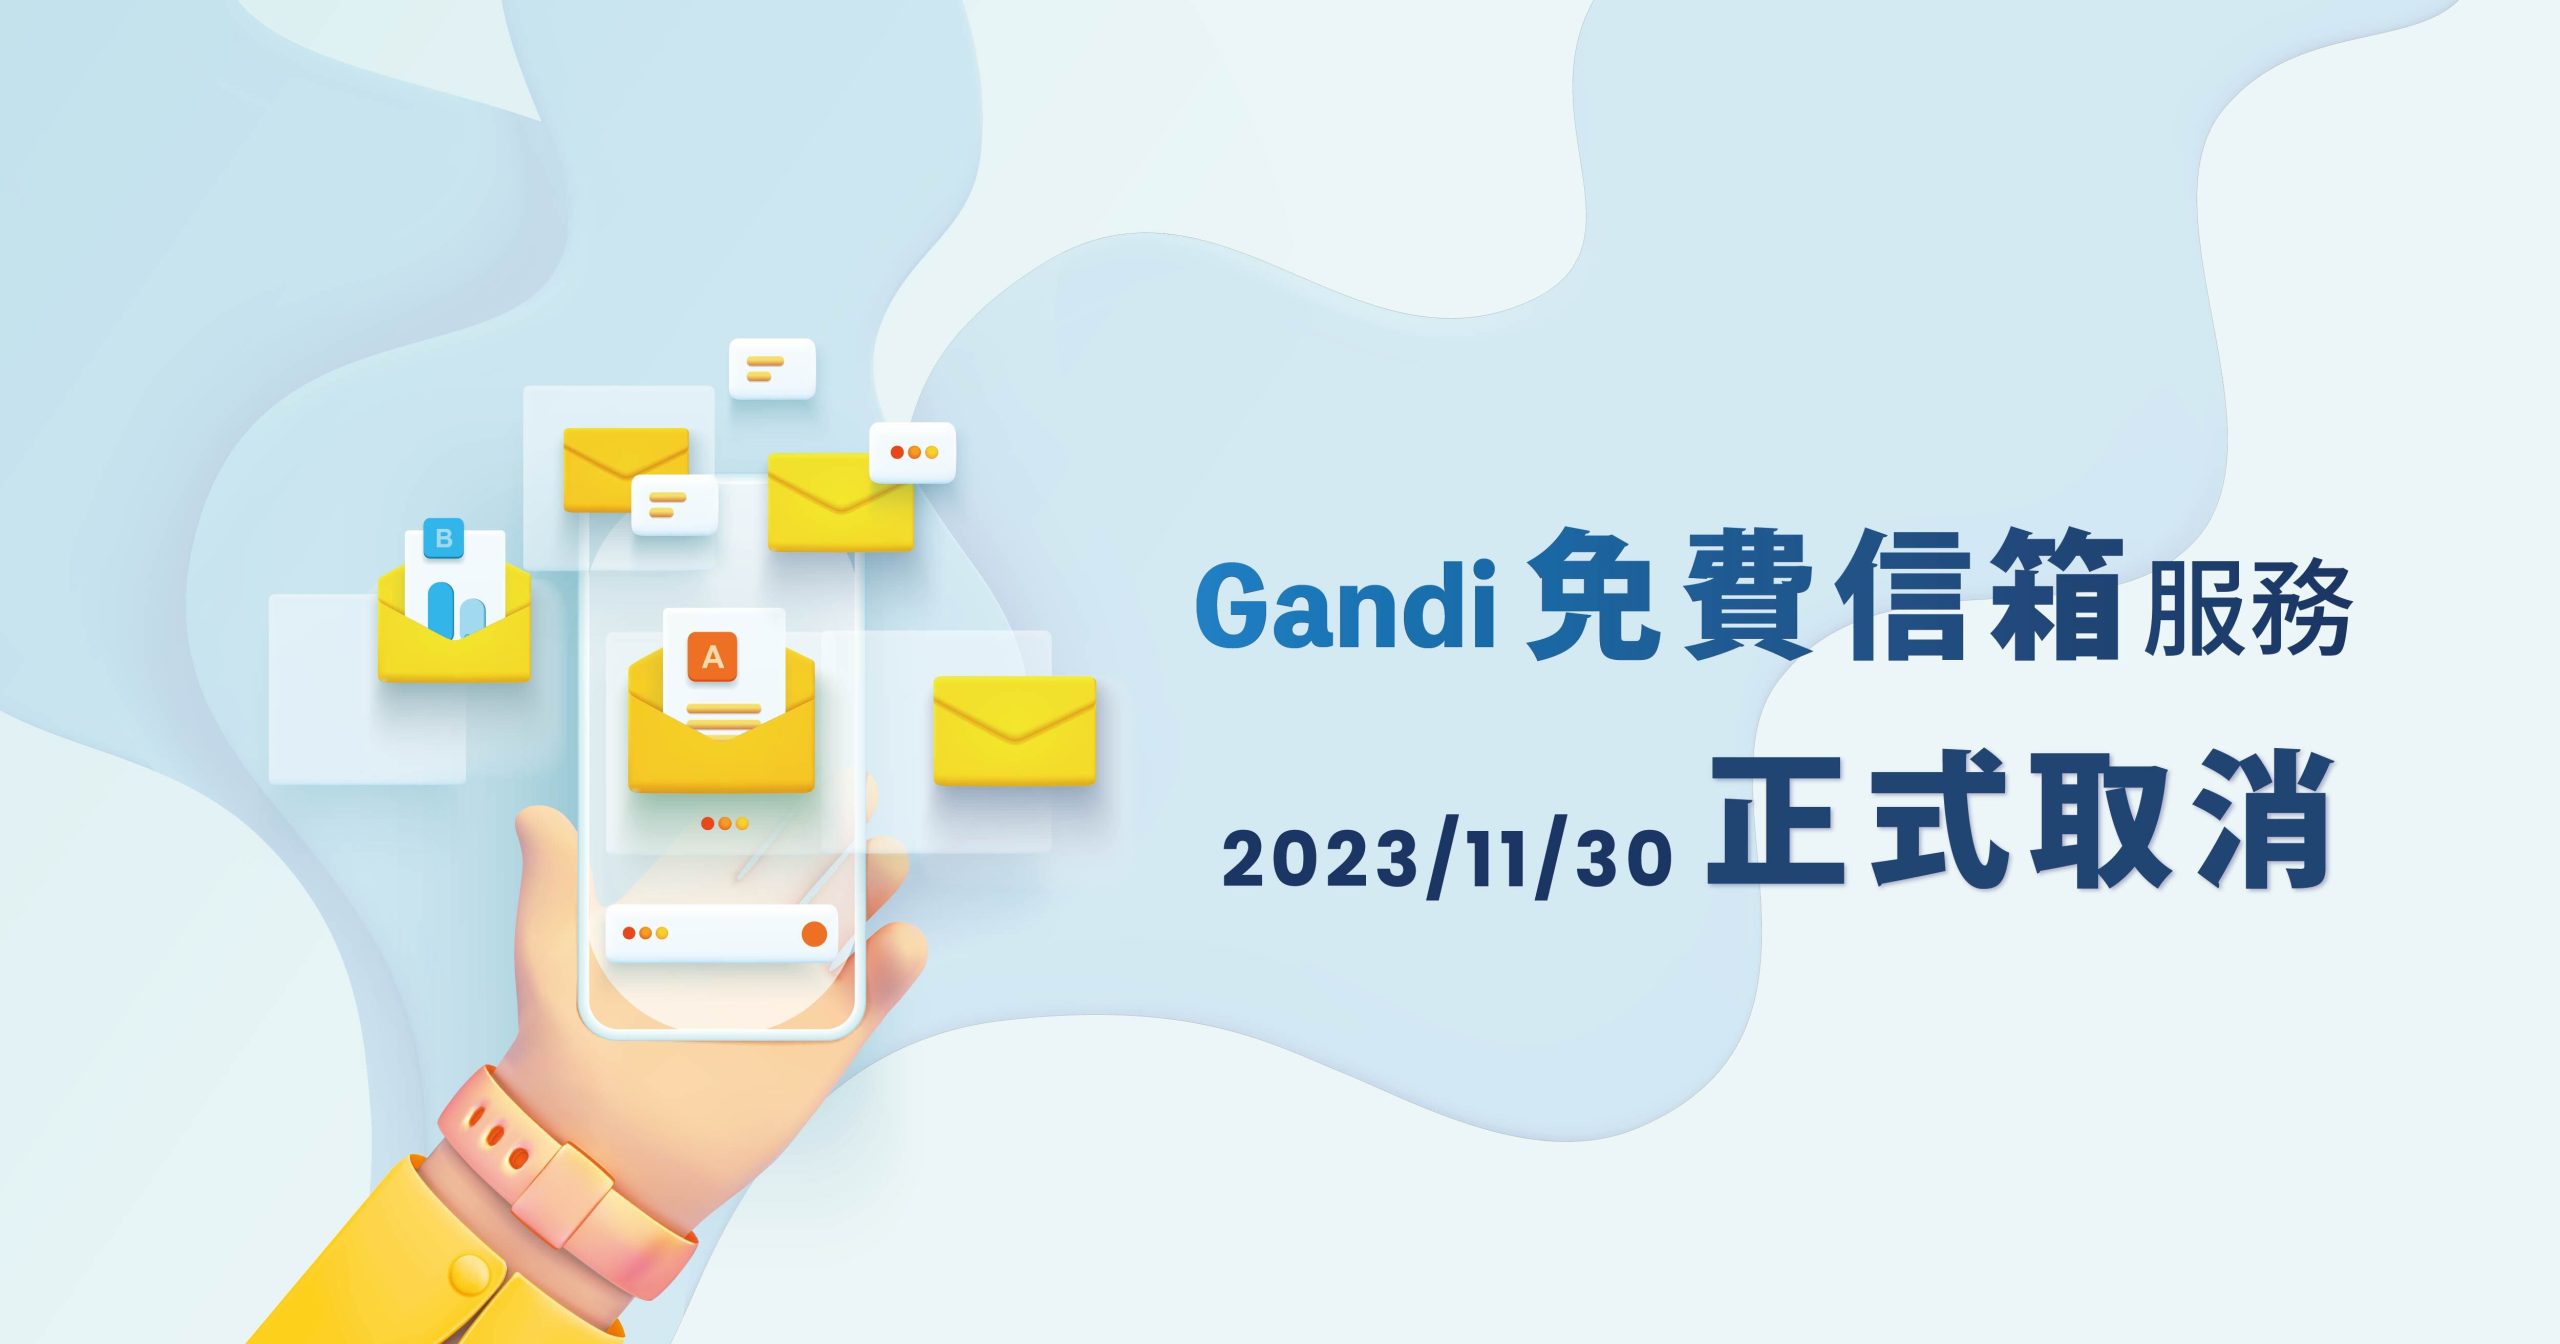 Gandi免費信箱服務將於 2023/11/30正式取消